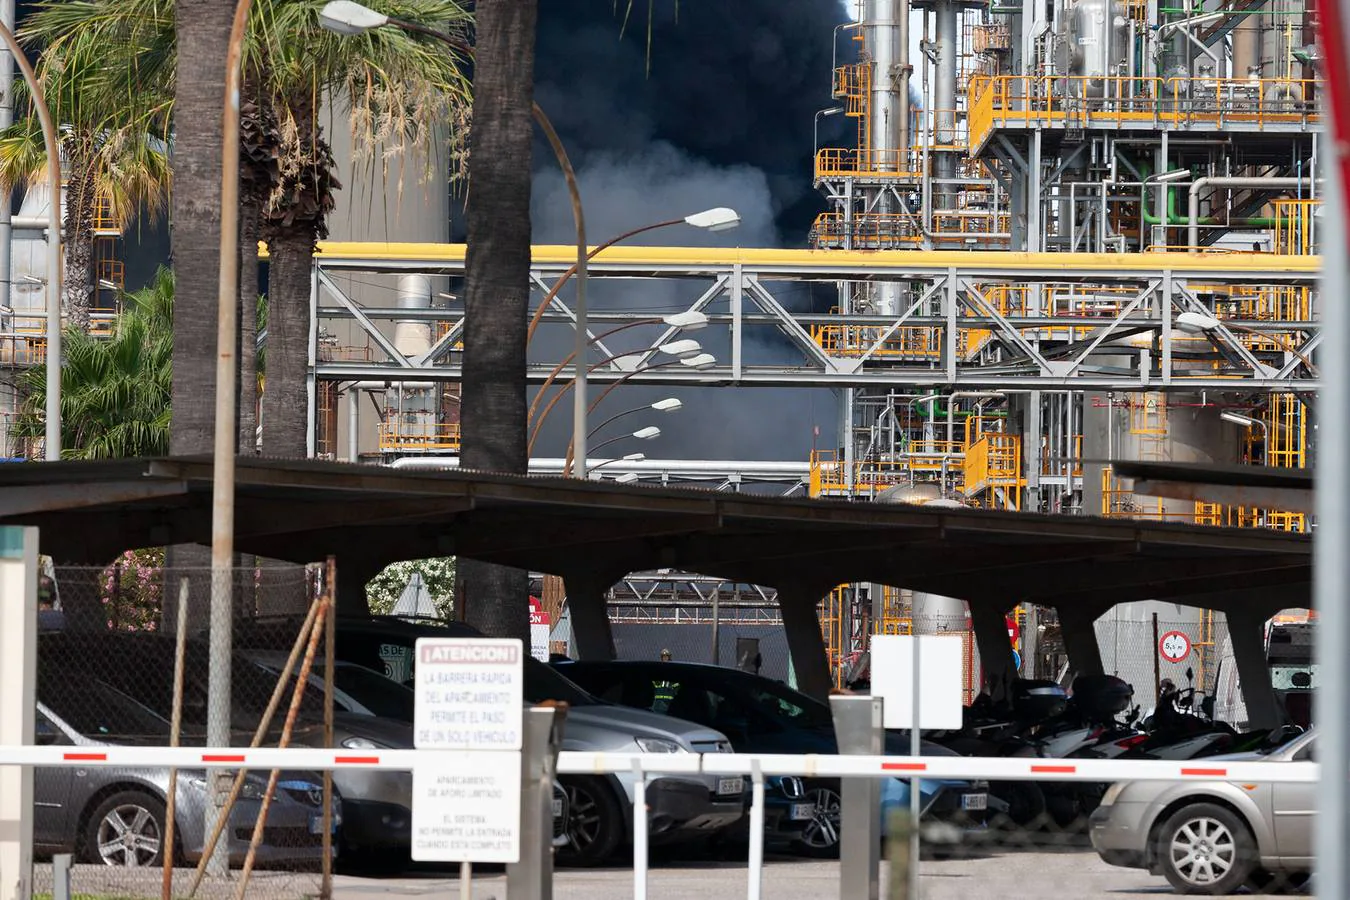 Fotos: Alarma en Cádiz por el incendio en la planta química de Indorama en San Roque